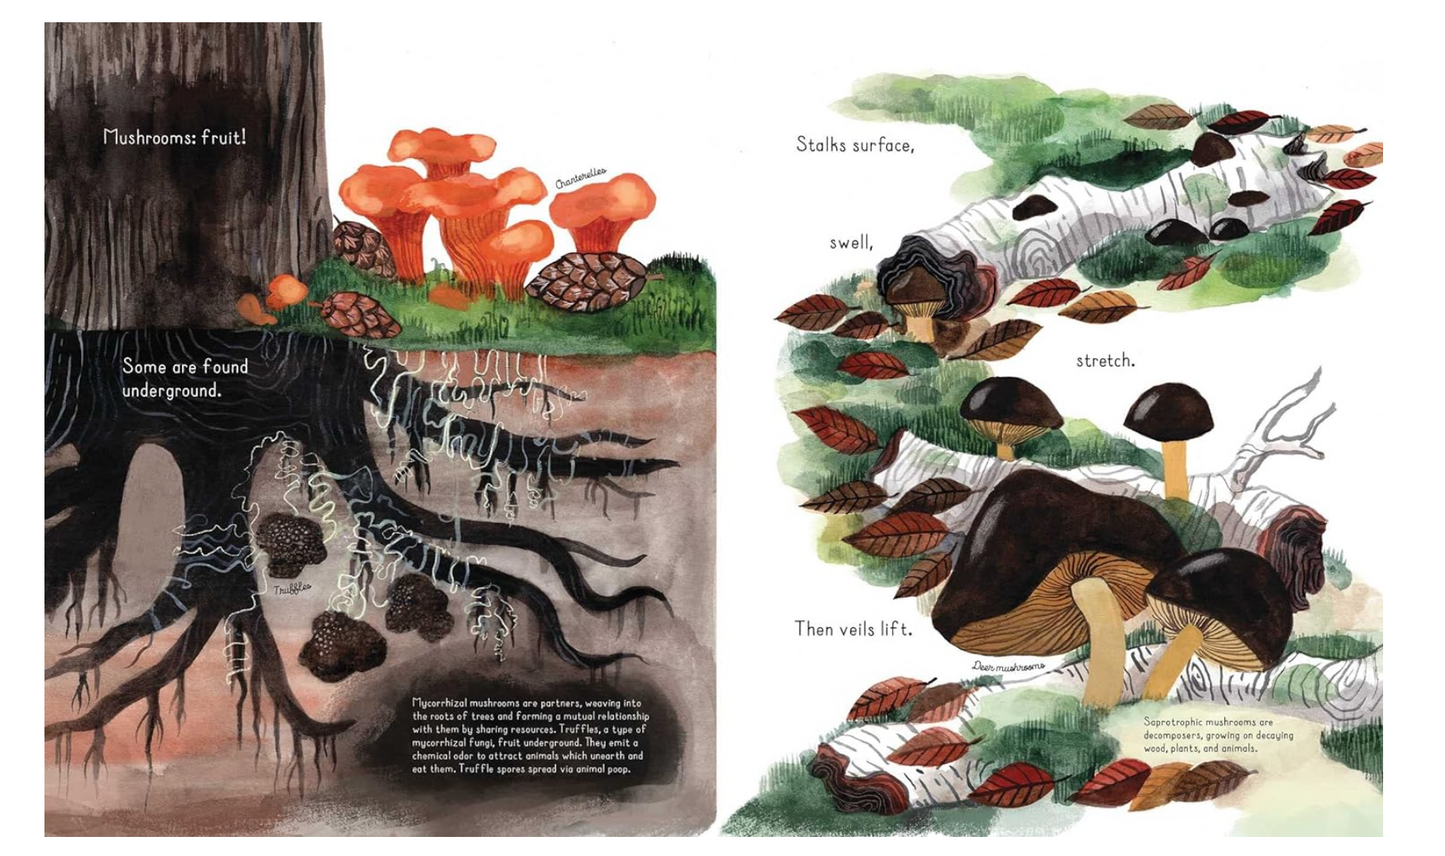 Oddly Enough Books- Fungi Grow by Maria Gianferrari